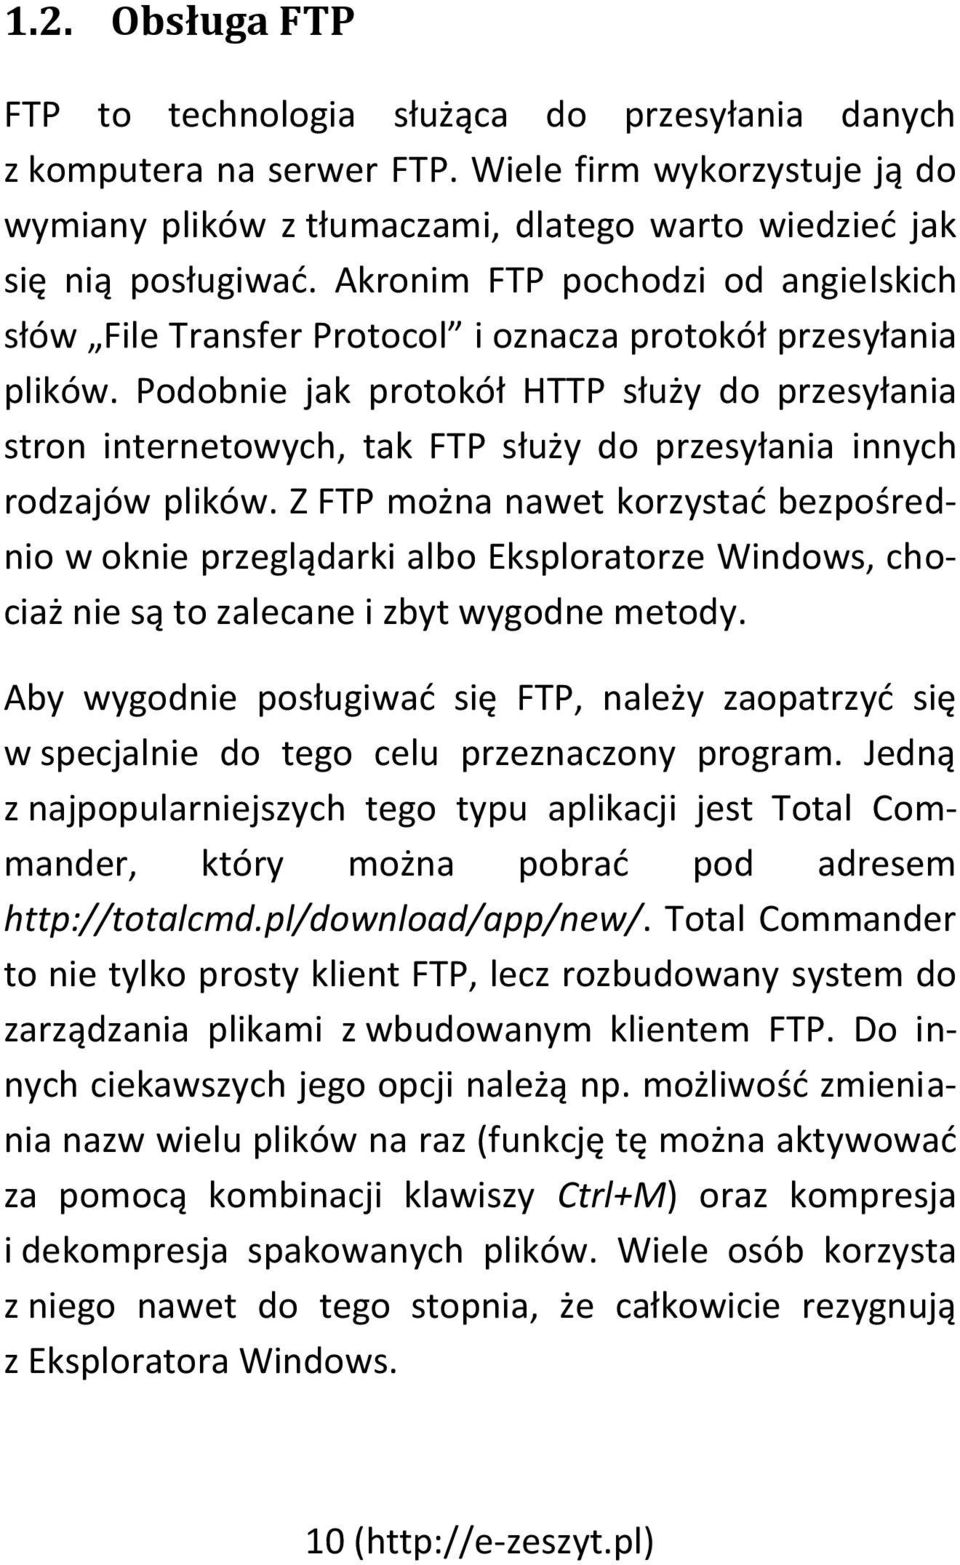 Podobnie jak protokół HTTP służy do przesyłania stron internetowych, tak FTP służy do przesyłania innych rodzajów plików.